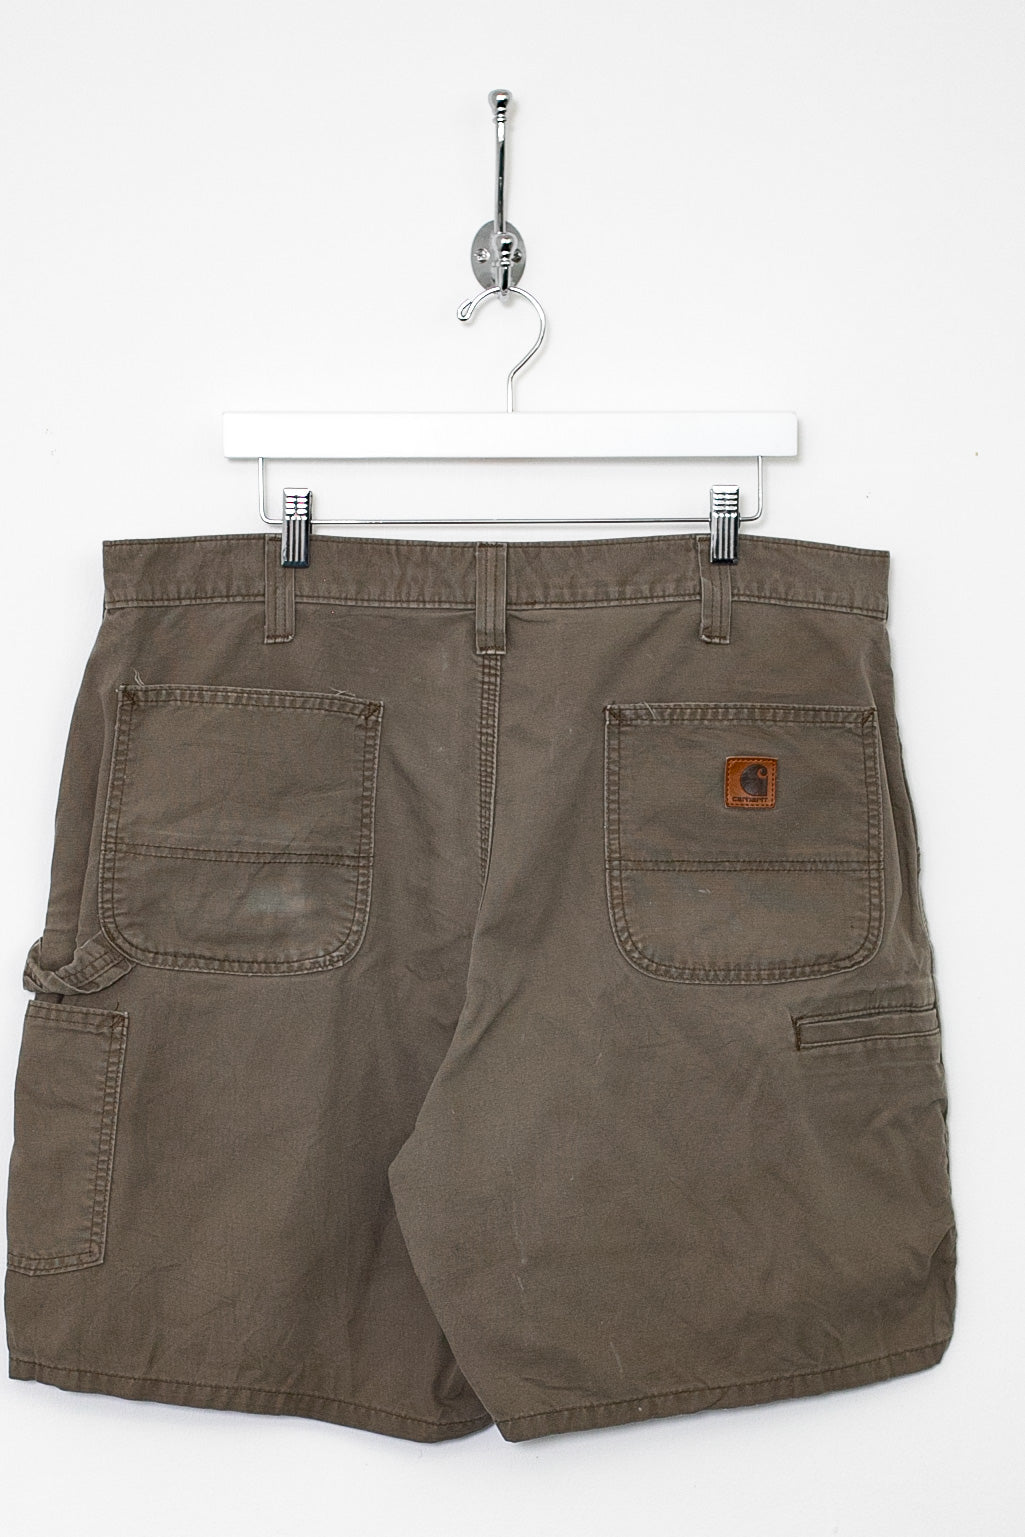 00s Carhartt Carpenter Trousers (XL)